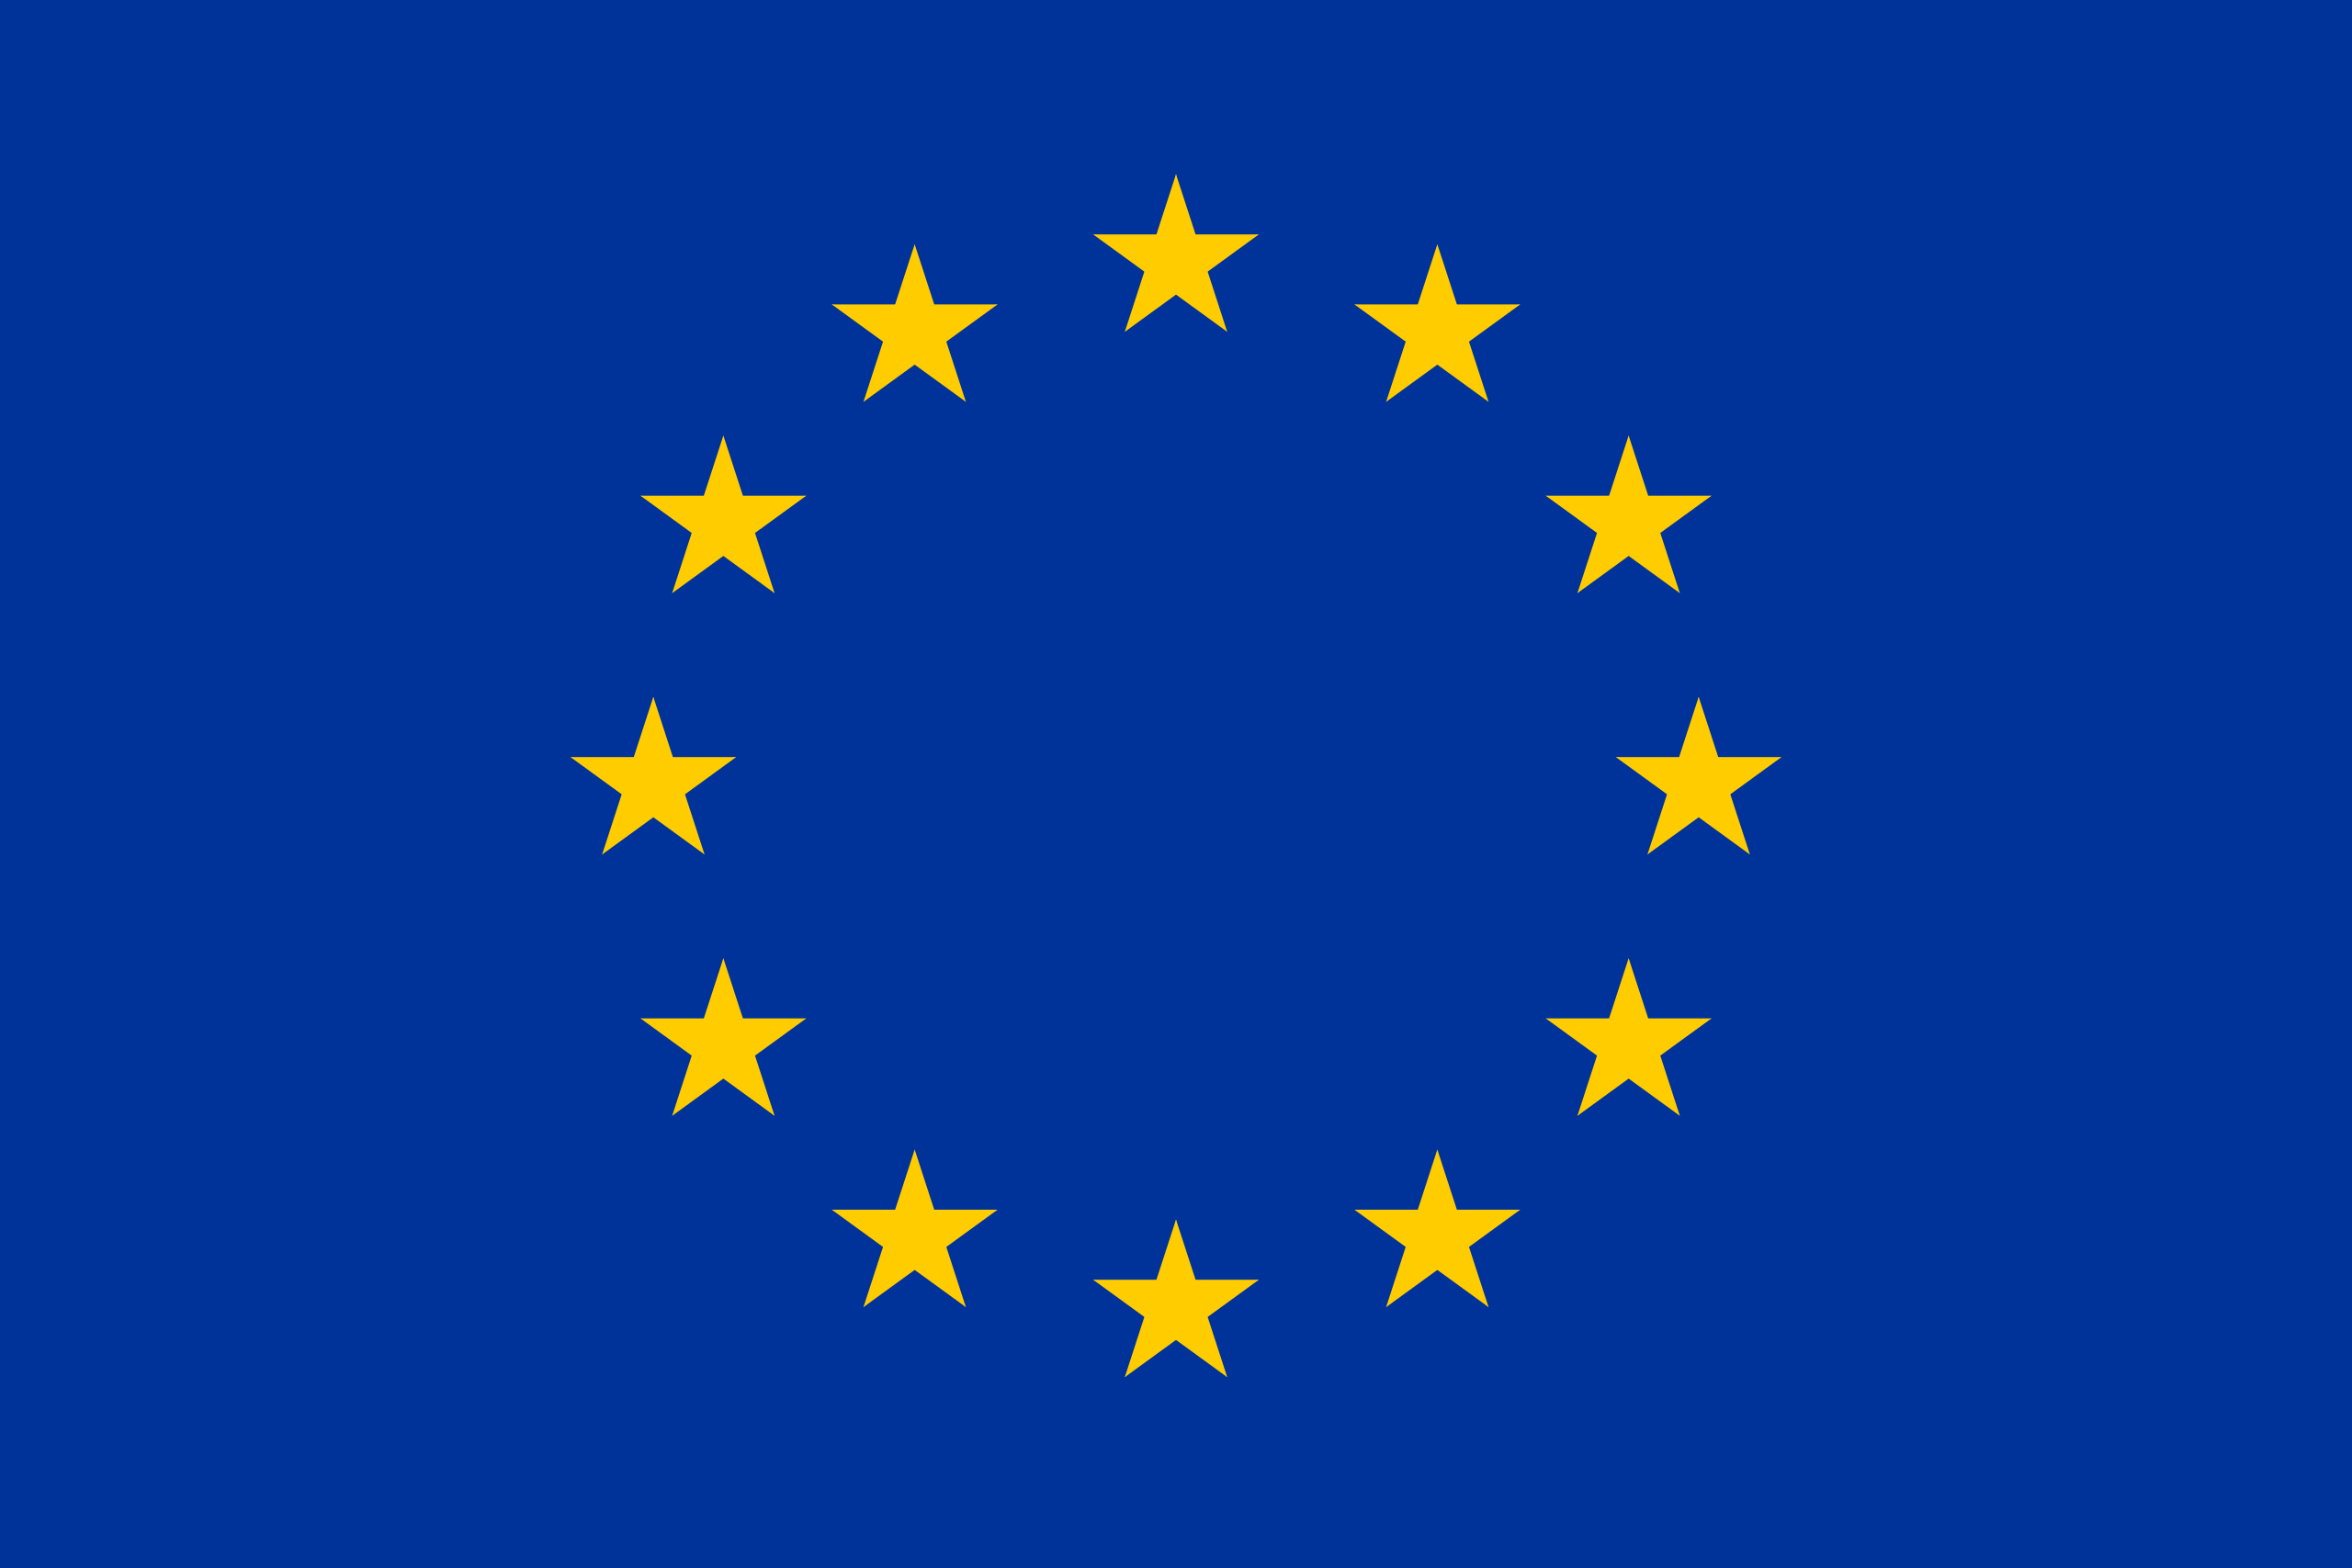 "European Union"